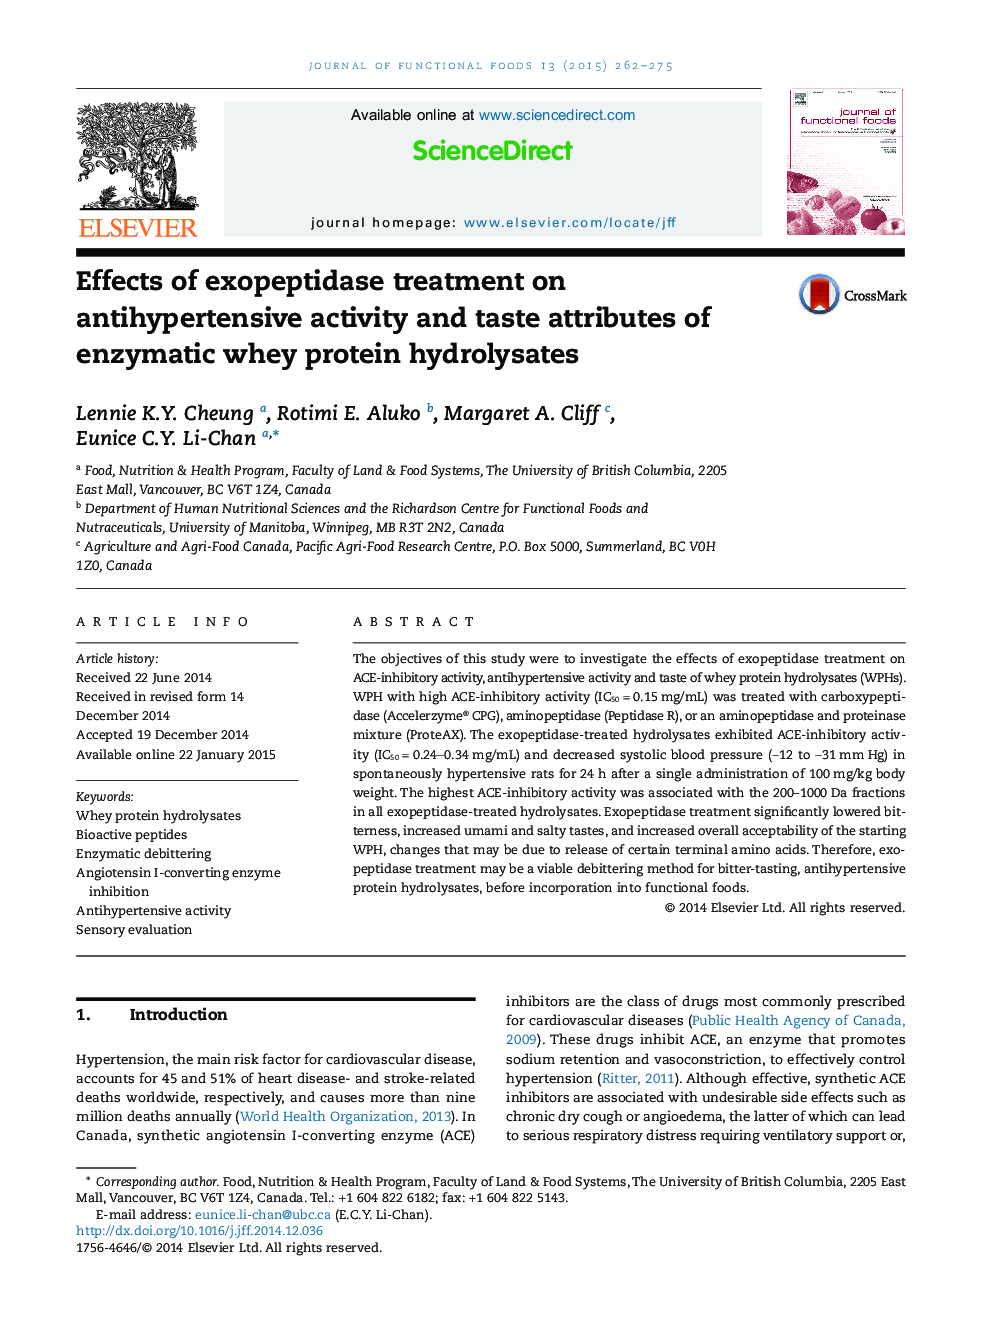 اثرات درمان اکسیپپتیداز بر فعالیت ضد قارچی و ویژگی های طعم دهنده هیدرولیز پروتئین آنزیمی 